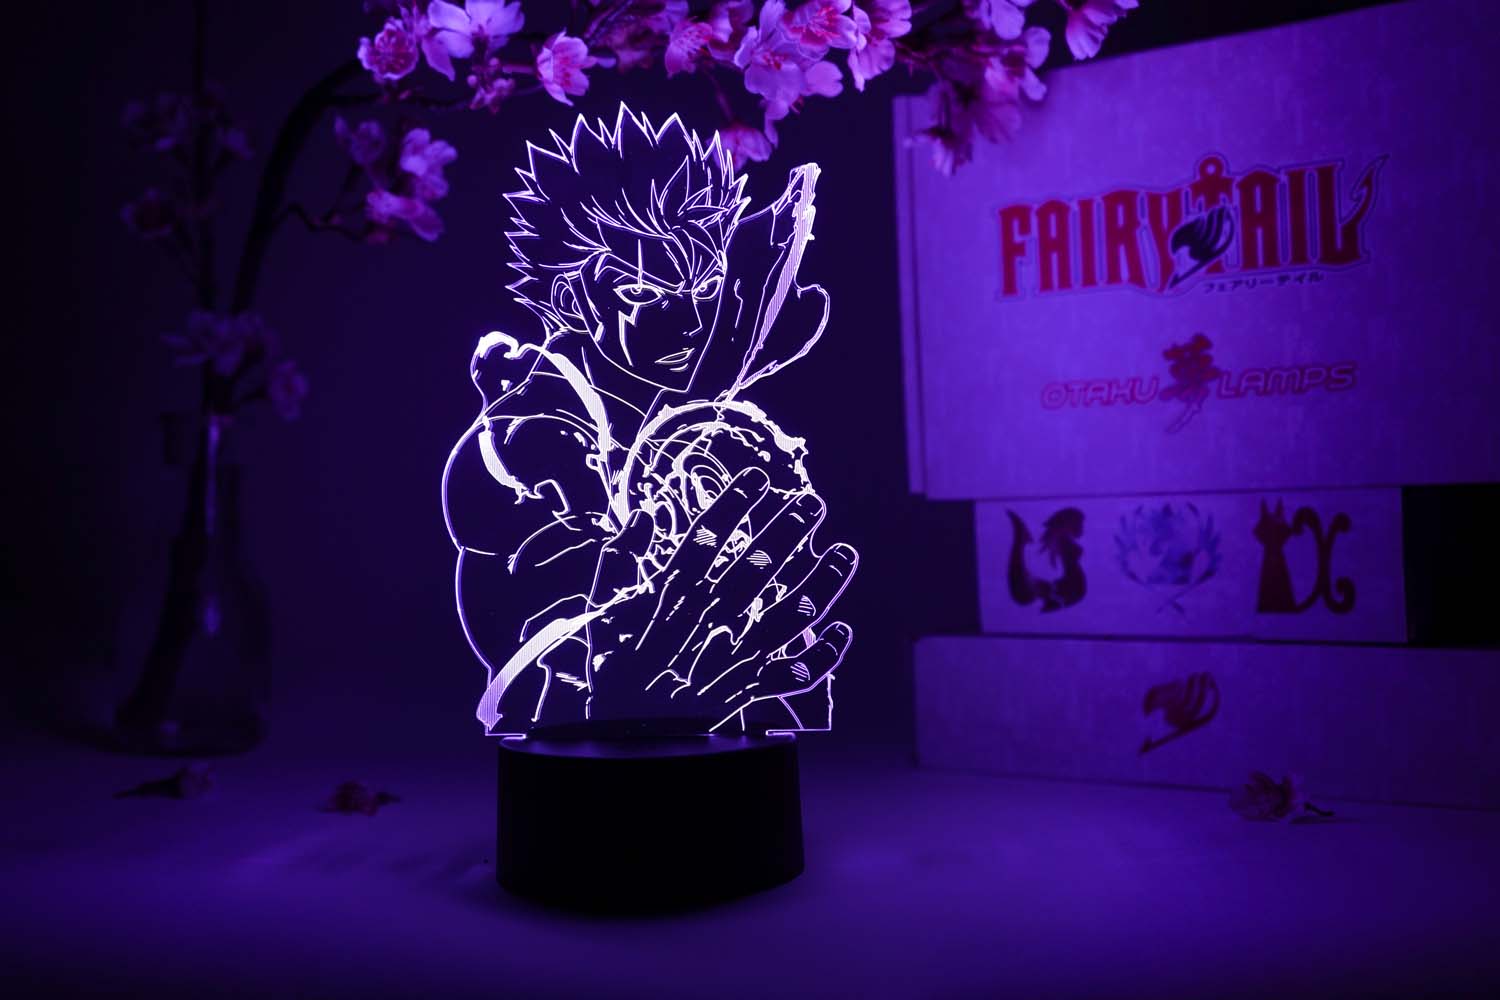 Laxus Dreyar Otaku Lamp (Fairy Tail)